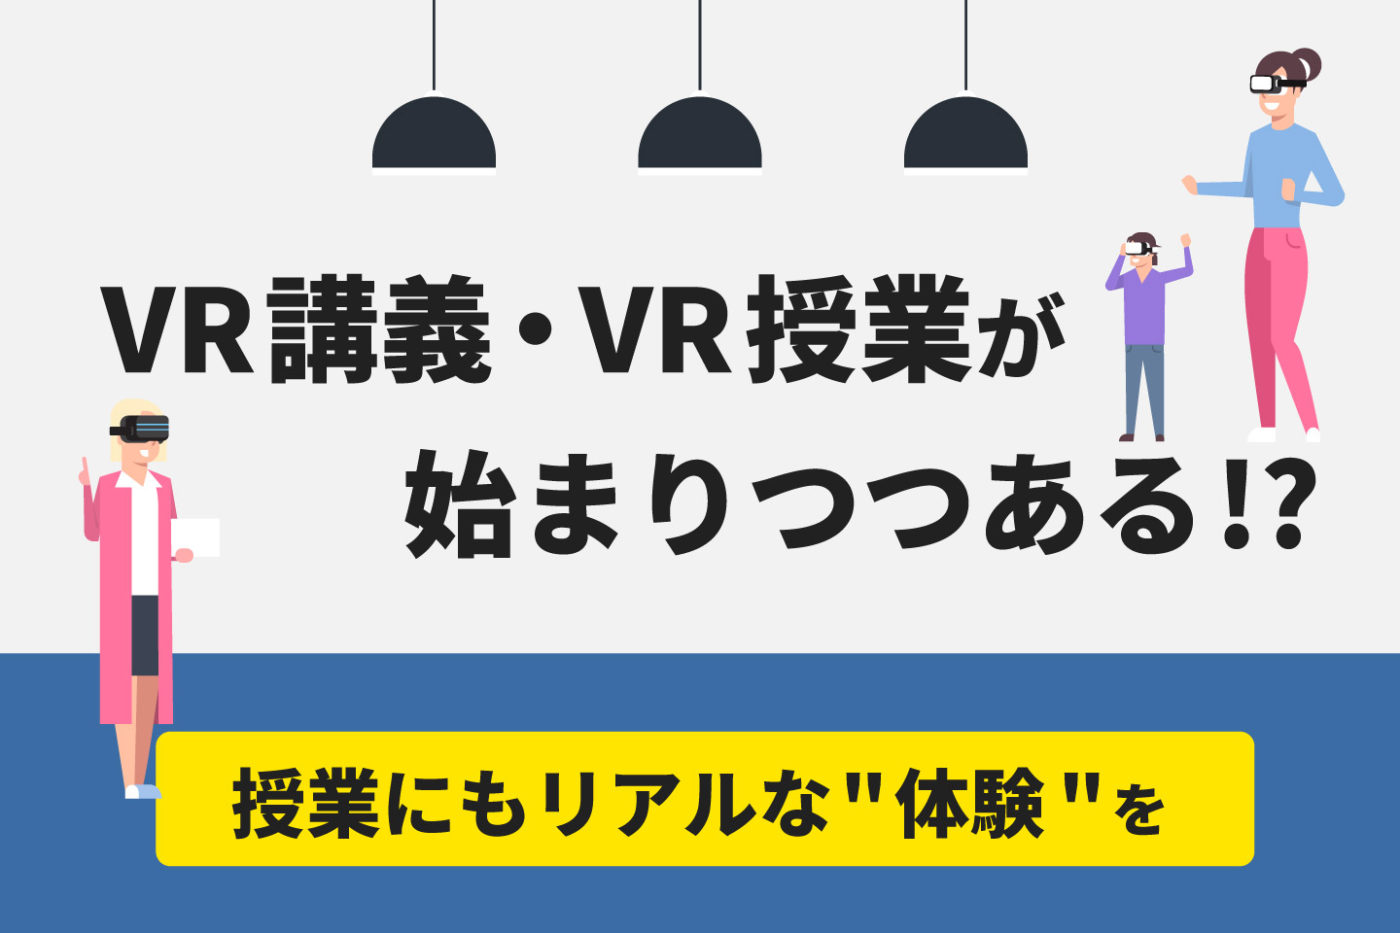 VR講義・VR授業が始まりつつある!?【授業にもリアルな"体験"を】